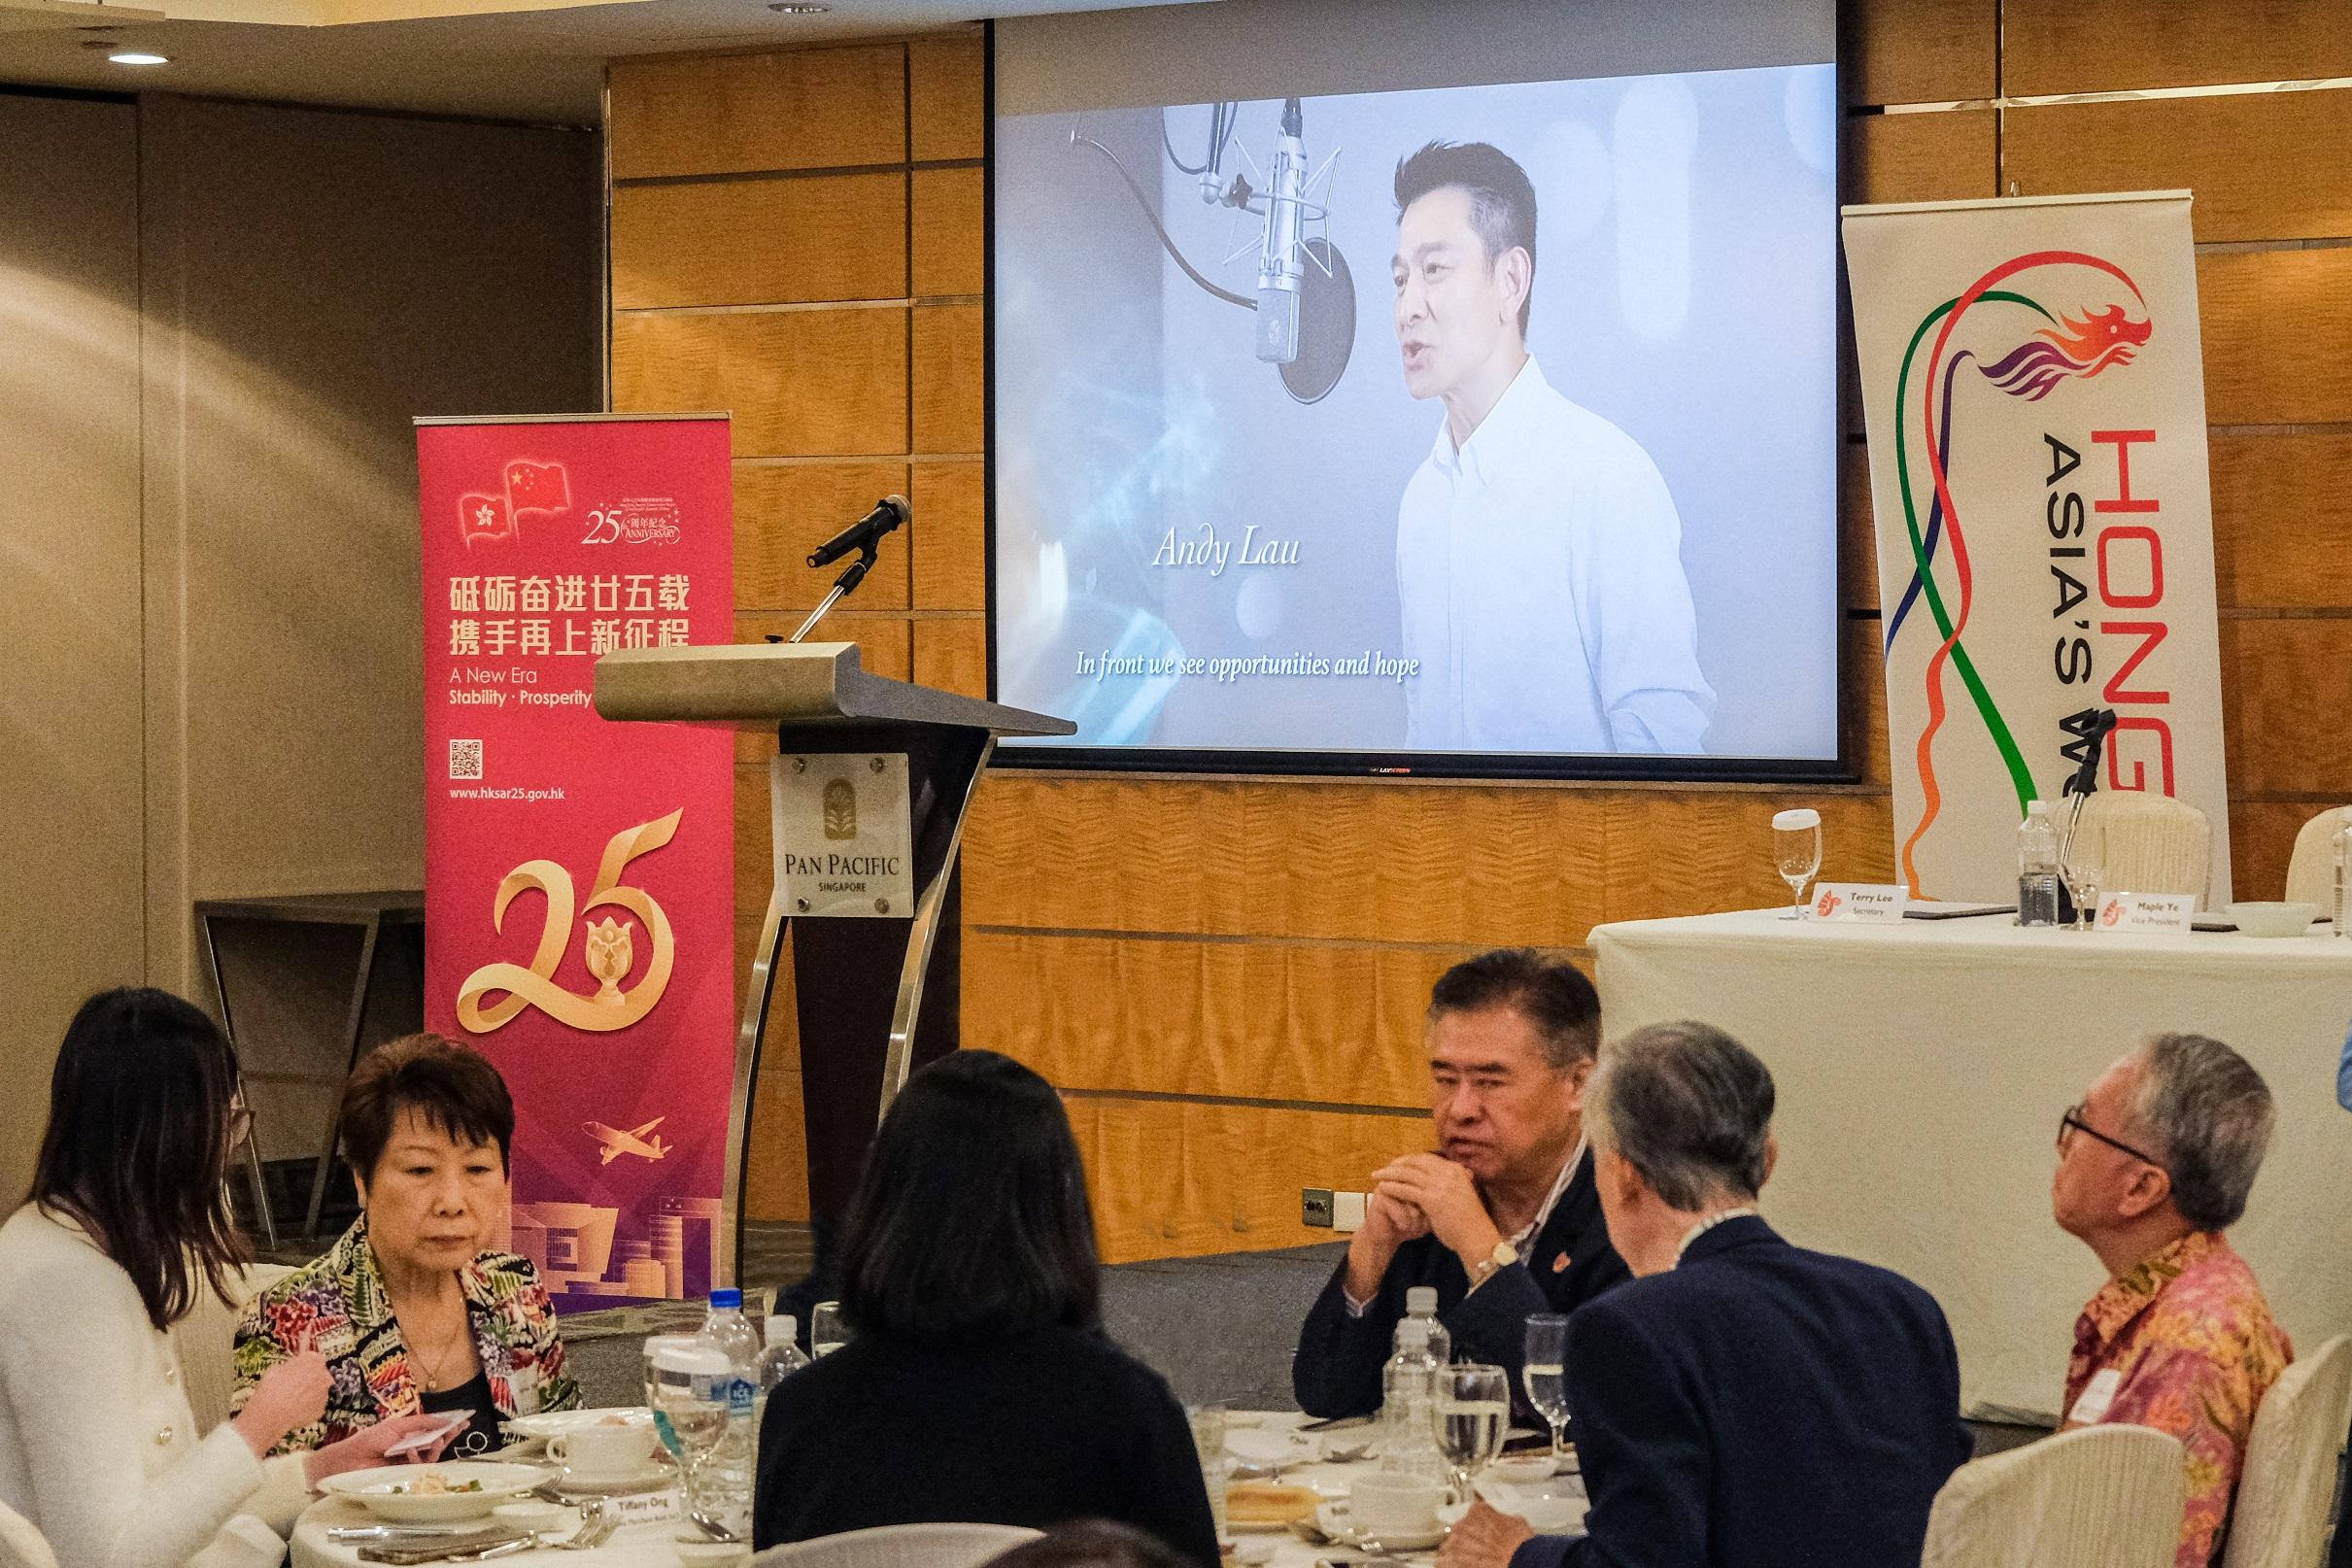 香港駐新加坡經濟貿易辦事處今日（六月二十一日）在新加坡舉辦商務午餐會，與新加坡商界分享香港的最新發展，以慶祝香港特別行政區成立二十五周年。圖示在場商界領袖和行政人員觀看香港特區成立二十五周年主題曲《前》的短片。